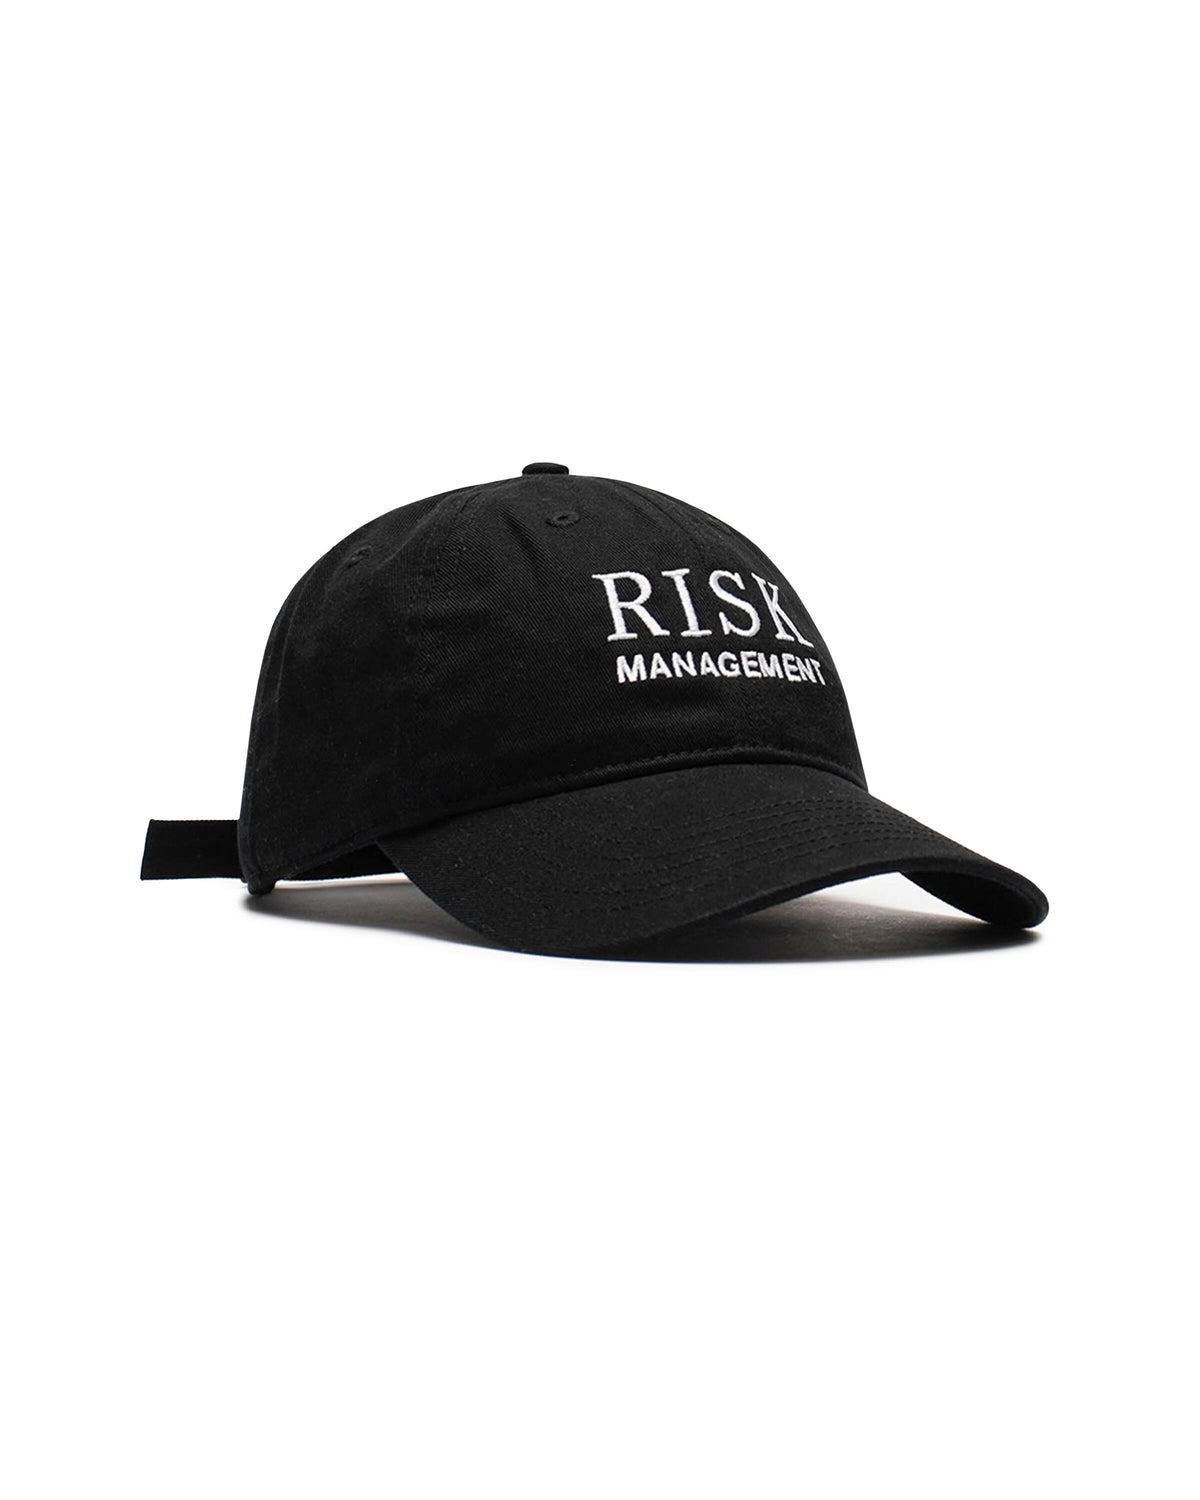 IDEA RISK MANAGEMENT HAT